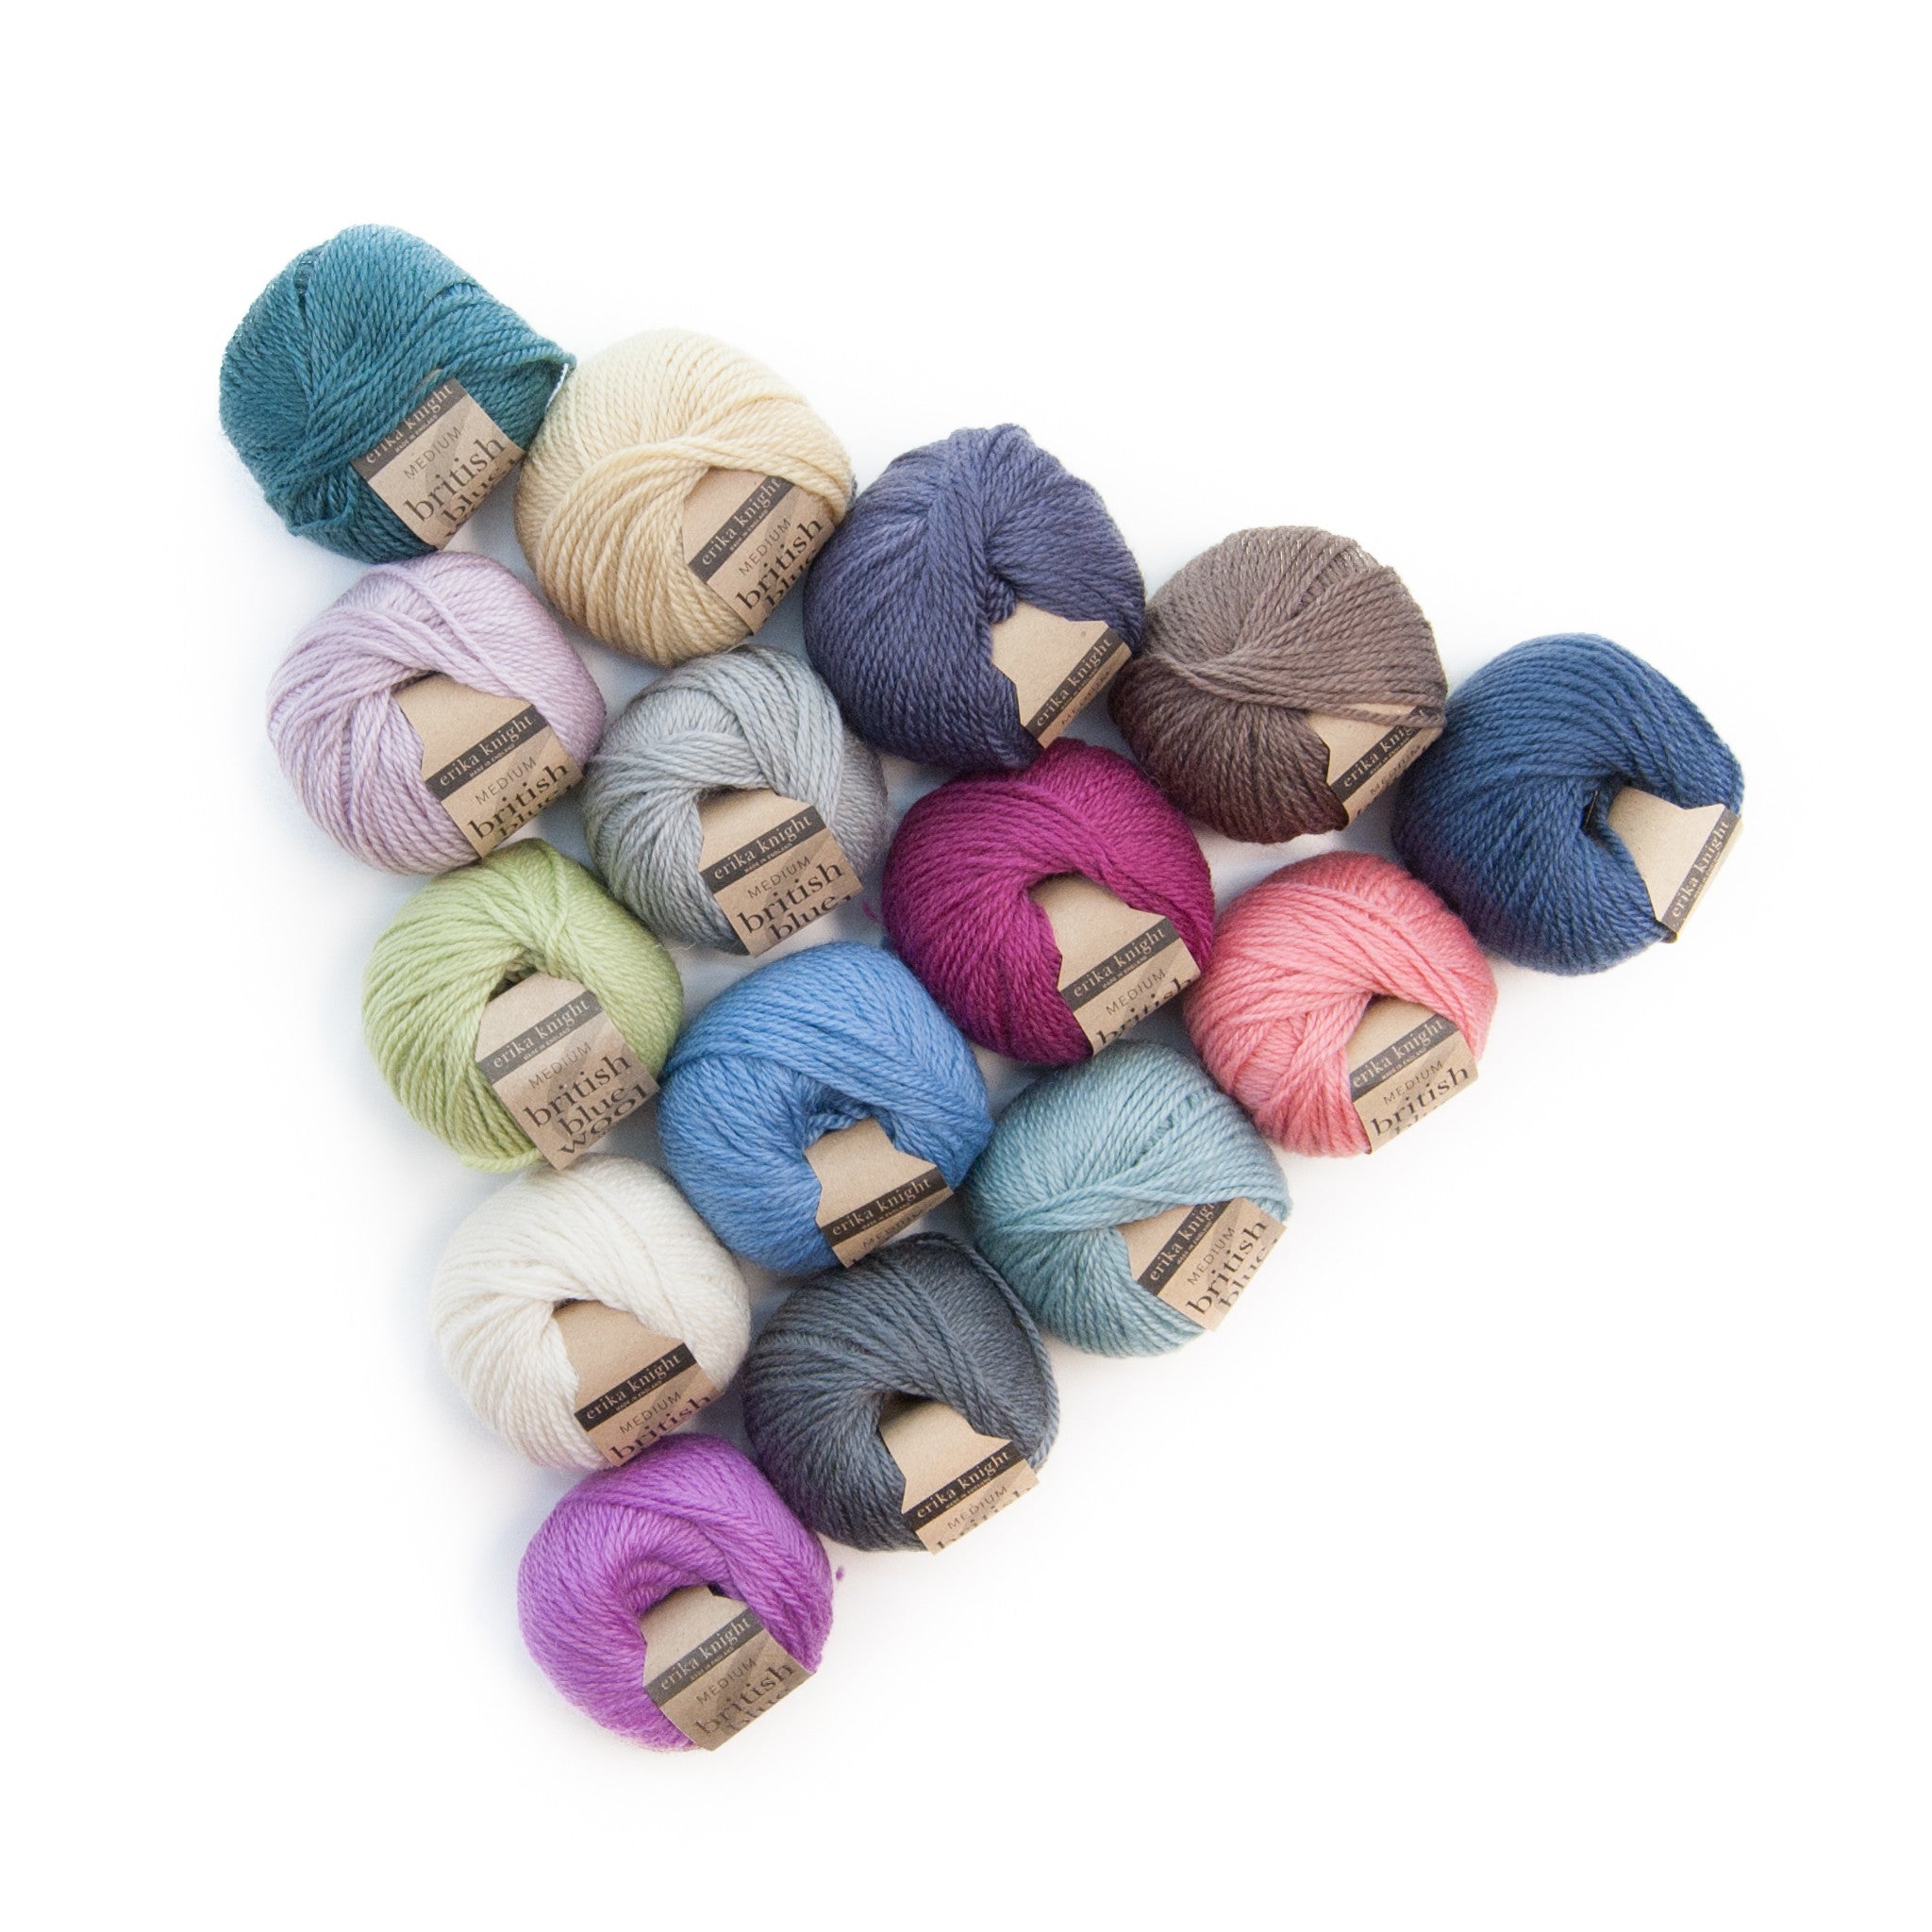 Yarn Skeins Versatile Multicolored Yarn Set